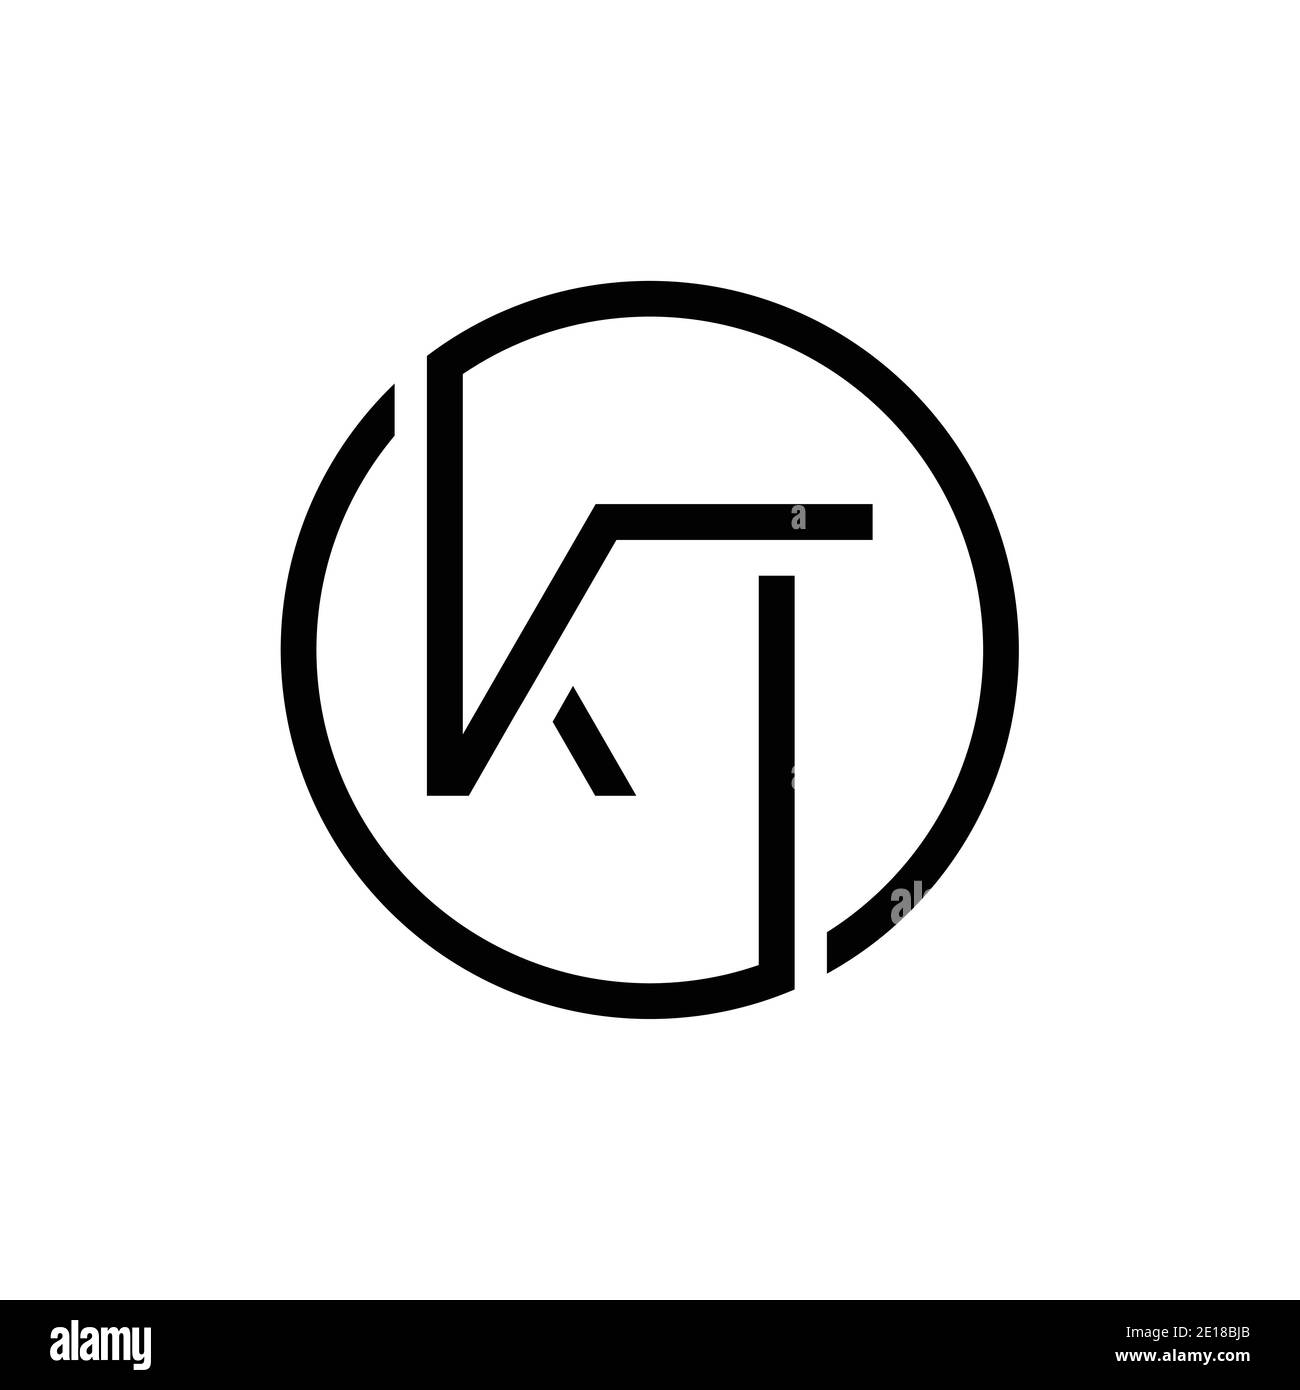 Linked Letter KT Logo Design vector Template. Creative Circle KT ...